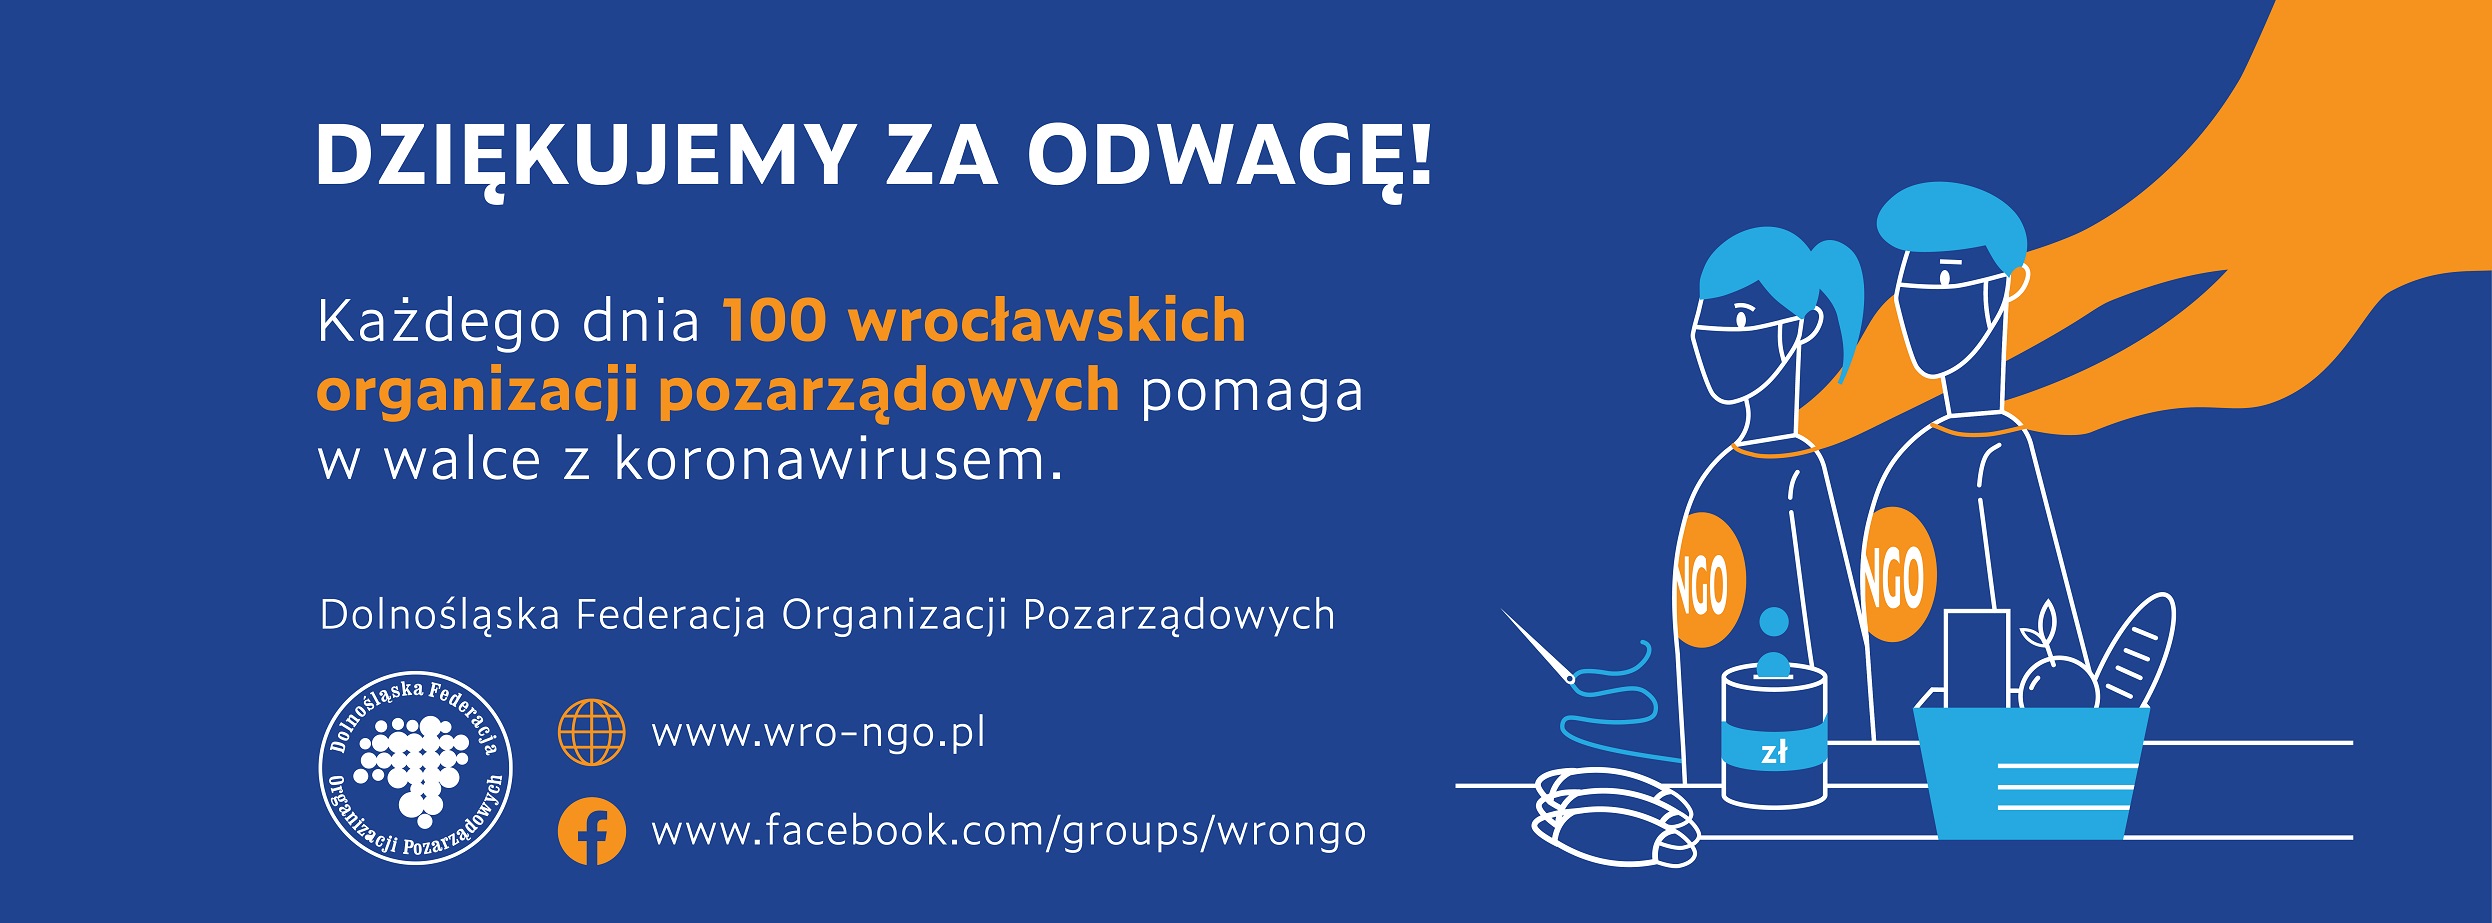 Informacja: 100 wrocławskich NGO pomaga w walce z koronawirusem